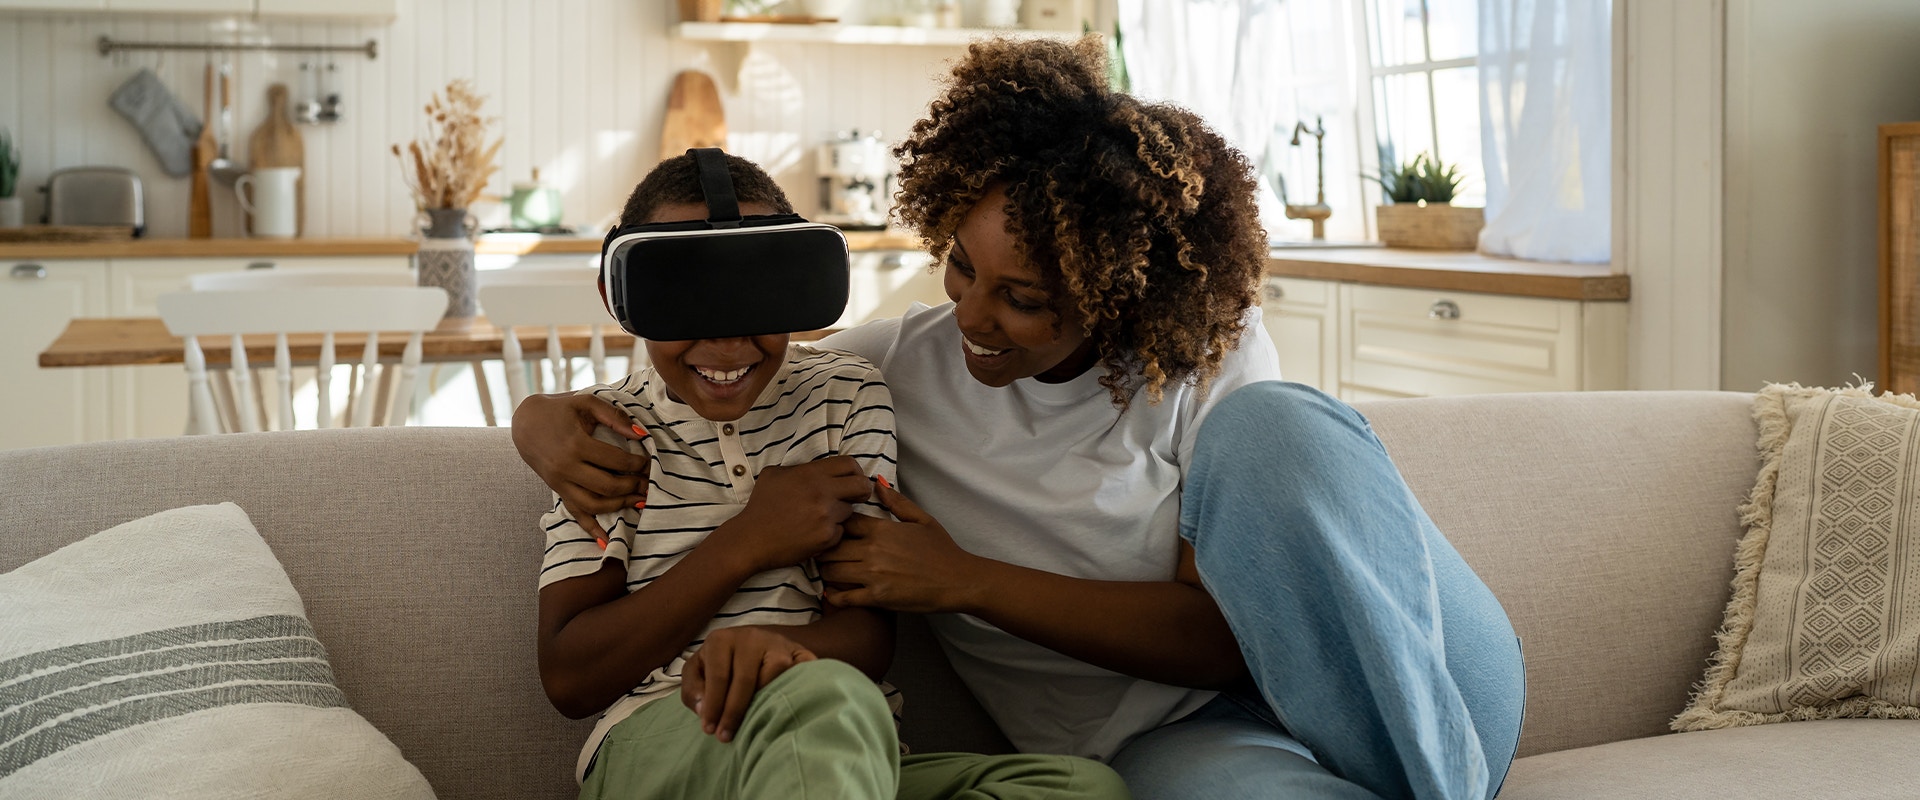 Eine Mutter und ihr Sohn spielen mit einer VR Brille.